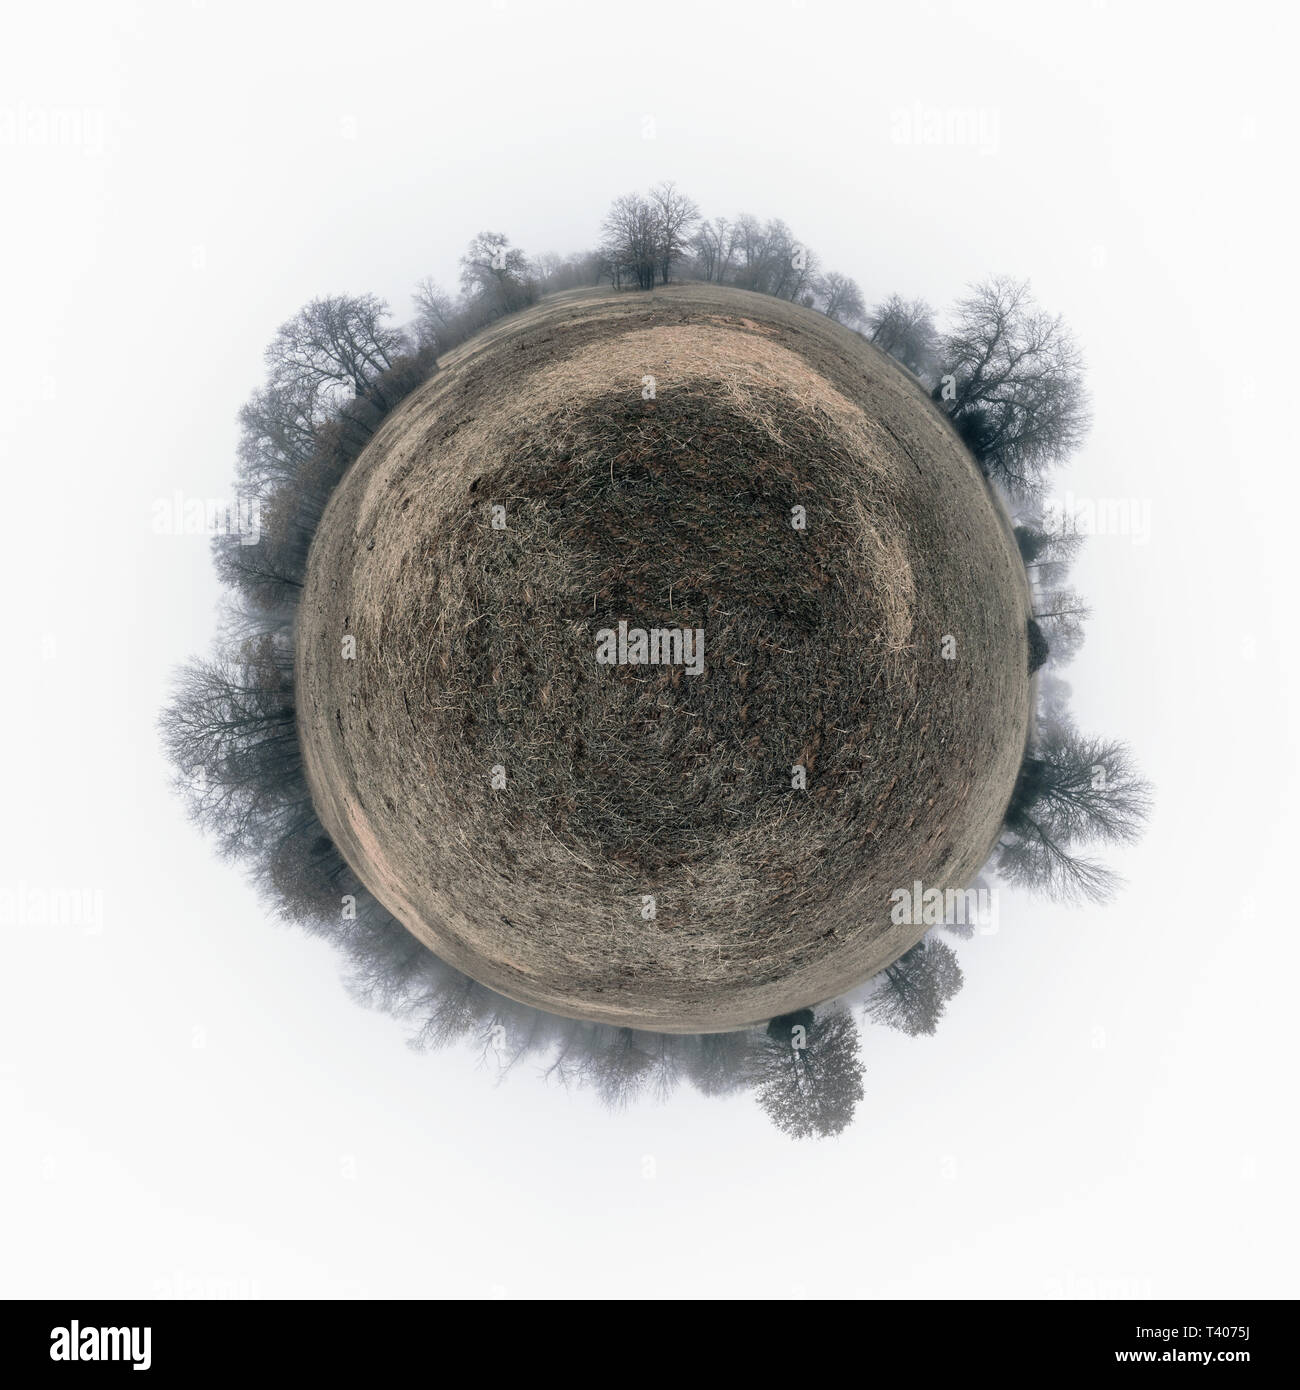 Panorama sphérique d'un champ sombre, terne avec de l'herbe sèche, entouré d'arbres sans feuilles dans un épais brouillard ; le concept d'une planète lointaine, triste Banque D'Images